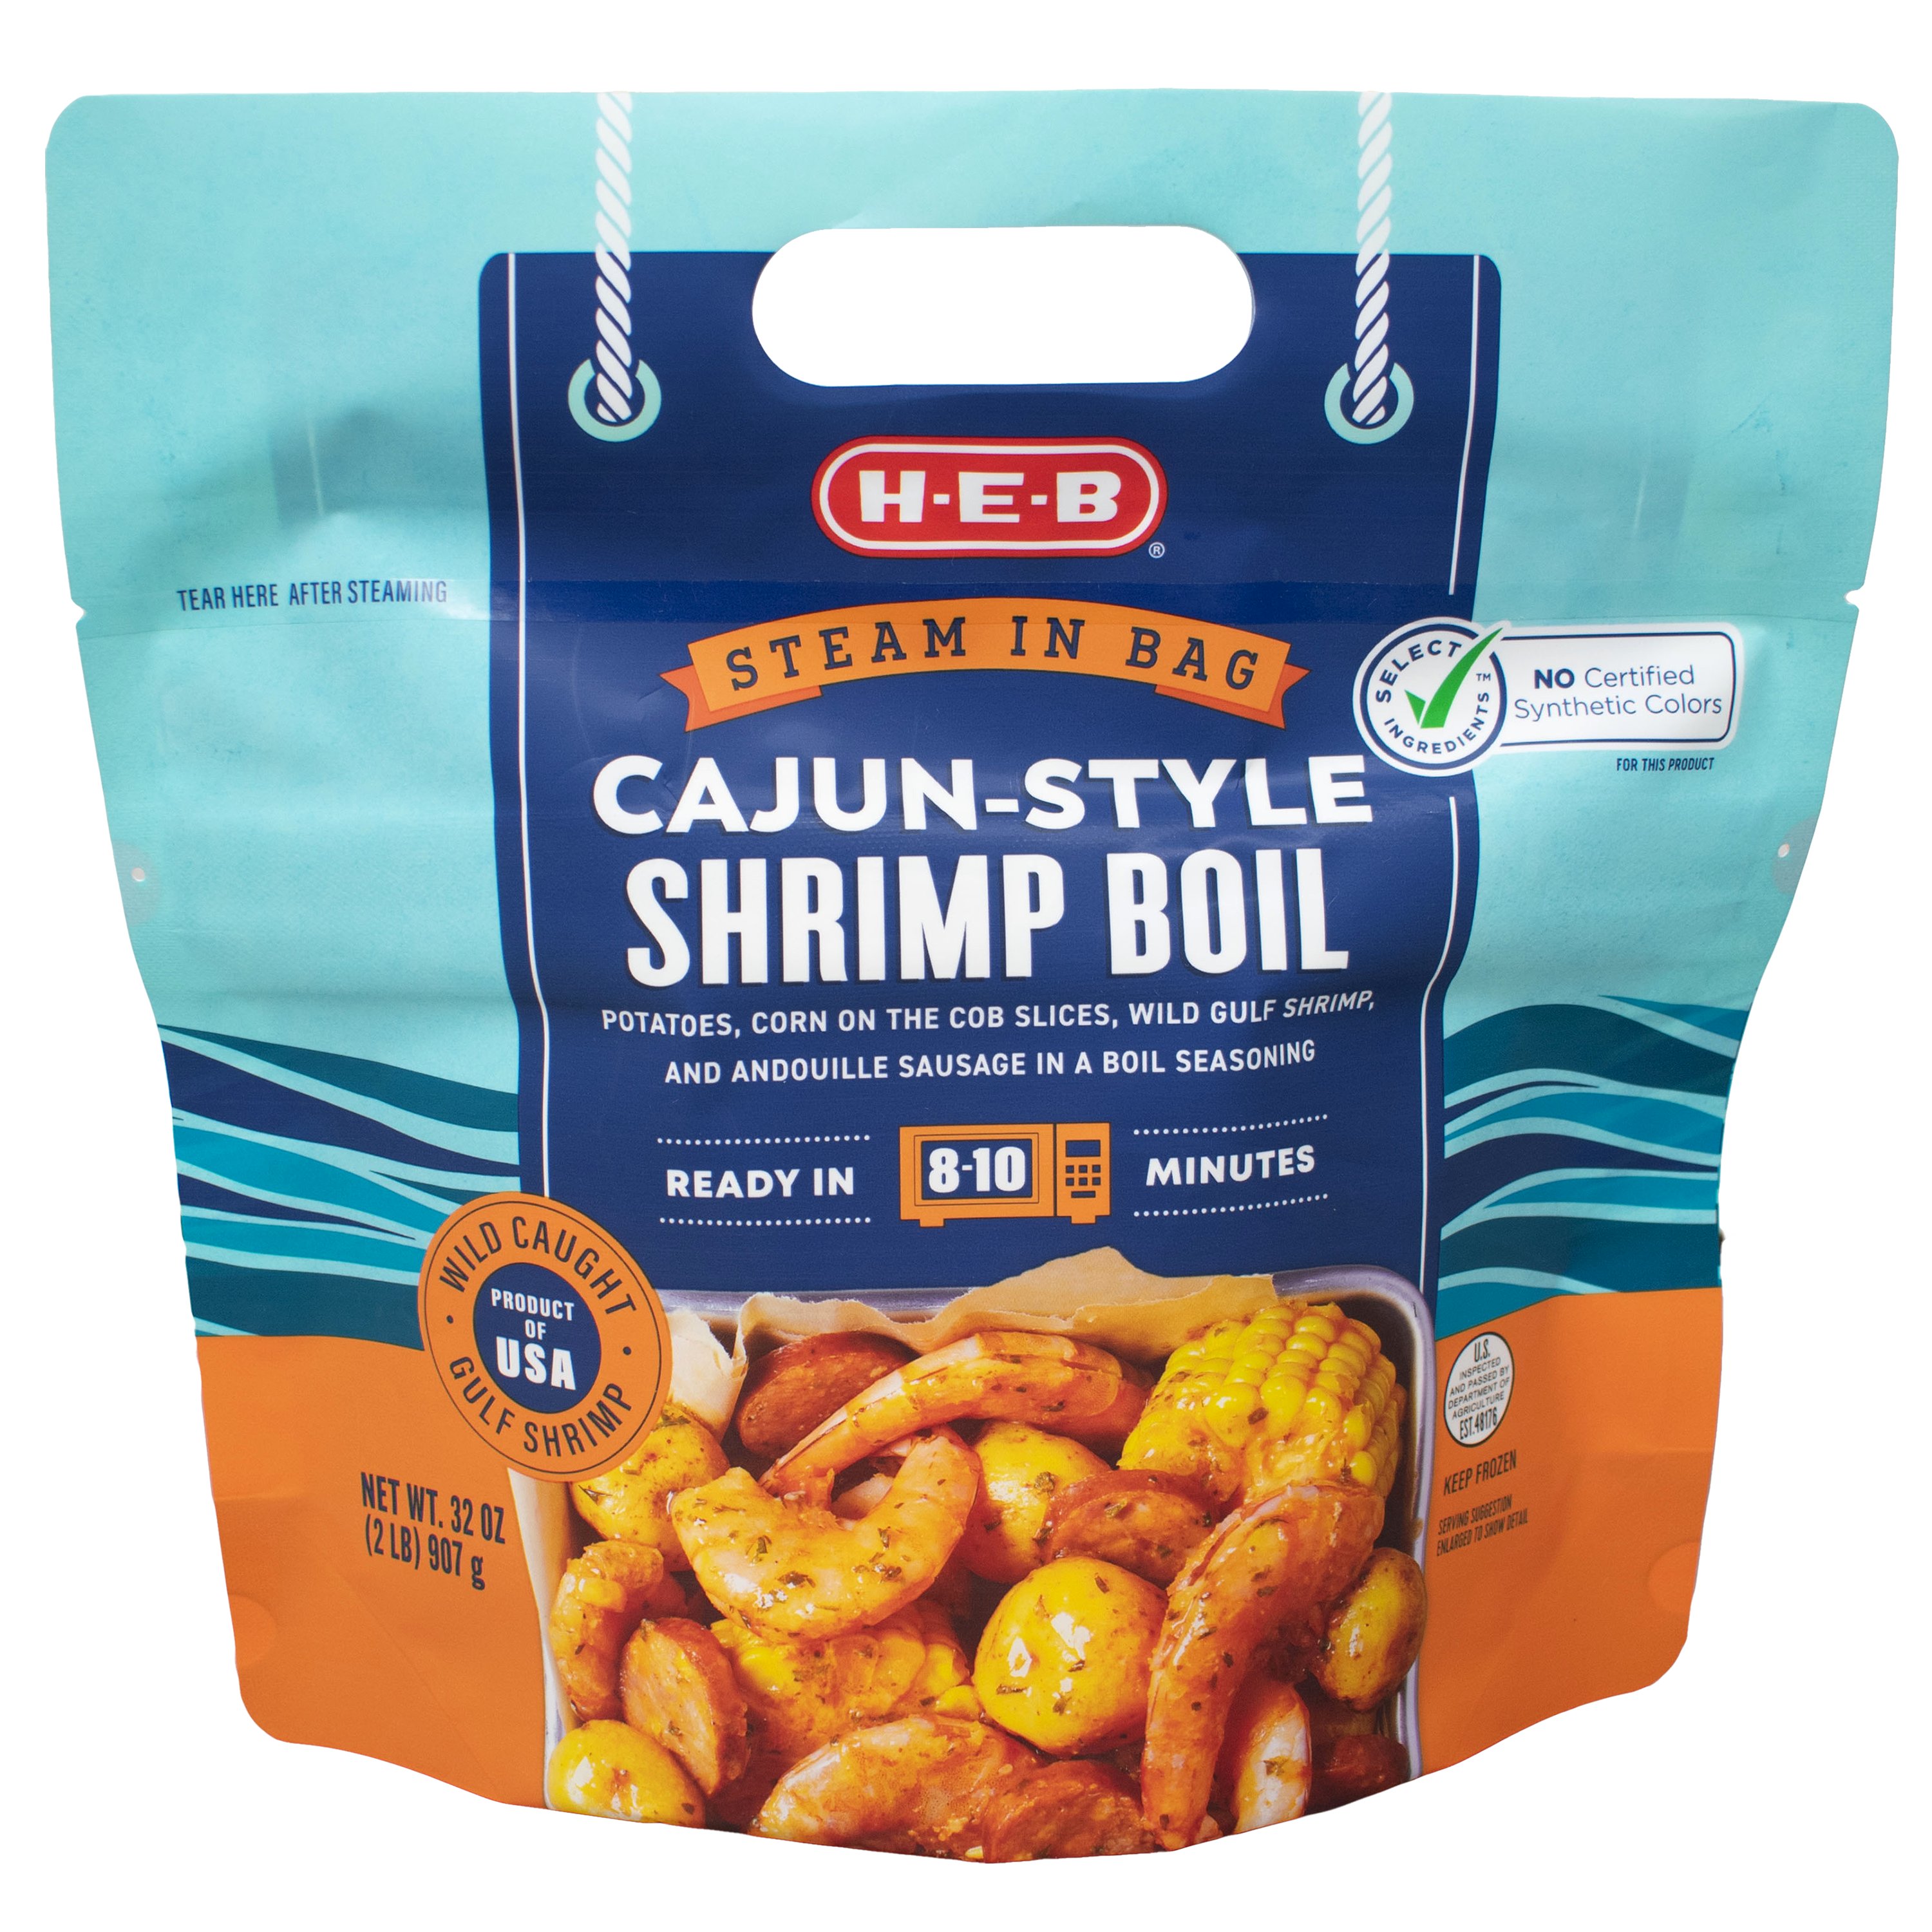 H-E-B Frozen Steamable Cajun-Style Shrimp Boil